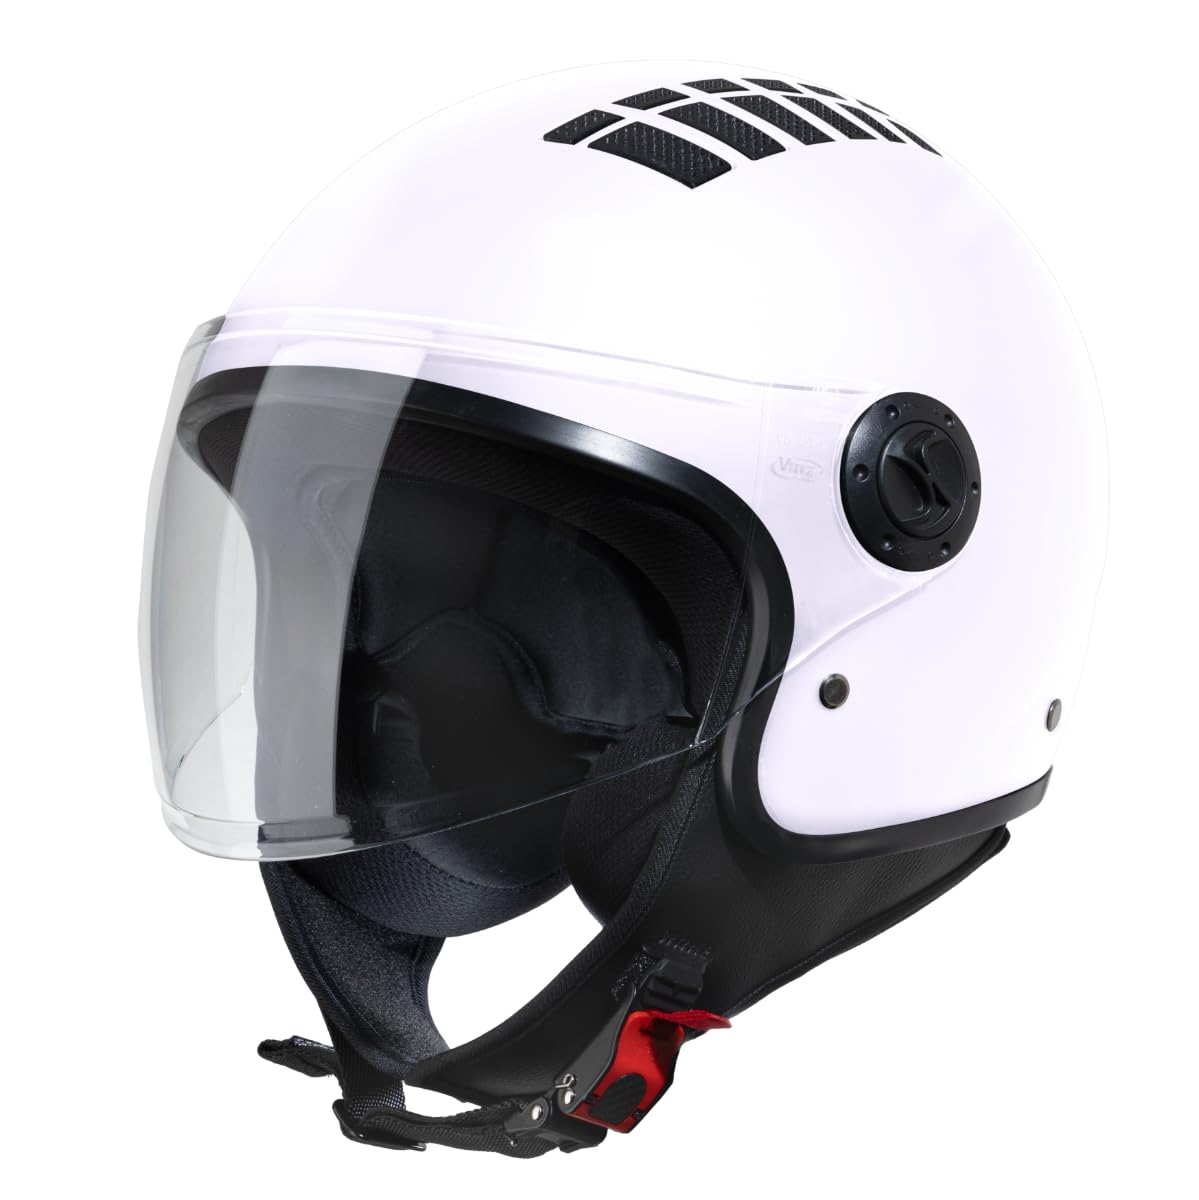 VINZ Como Jethelm mit Visier ECE 22.06 Zertifiziert | Roller Helm Mopedhelm Ideal Für Motoroller & Vespa | Herren und Damen | Komfortabler Motorradhelm XS-XL | Weiß von Vinz